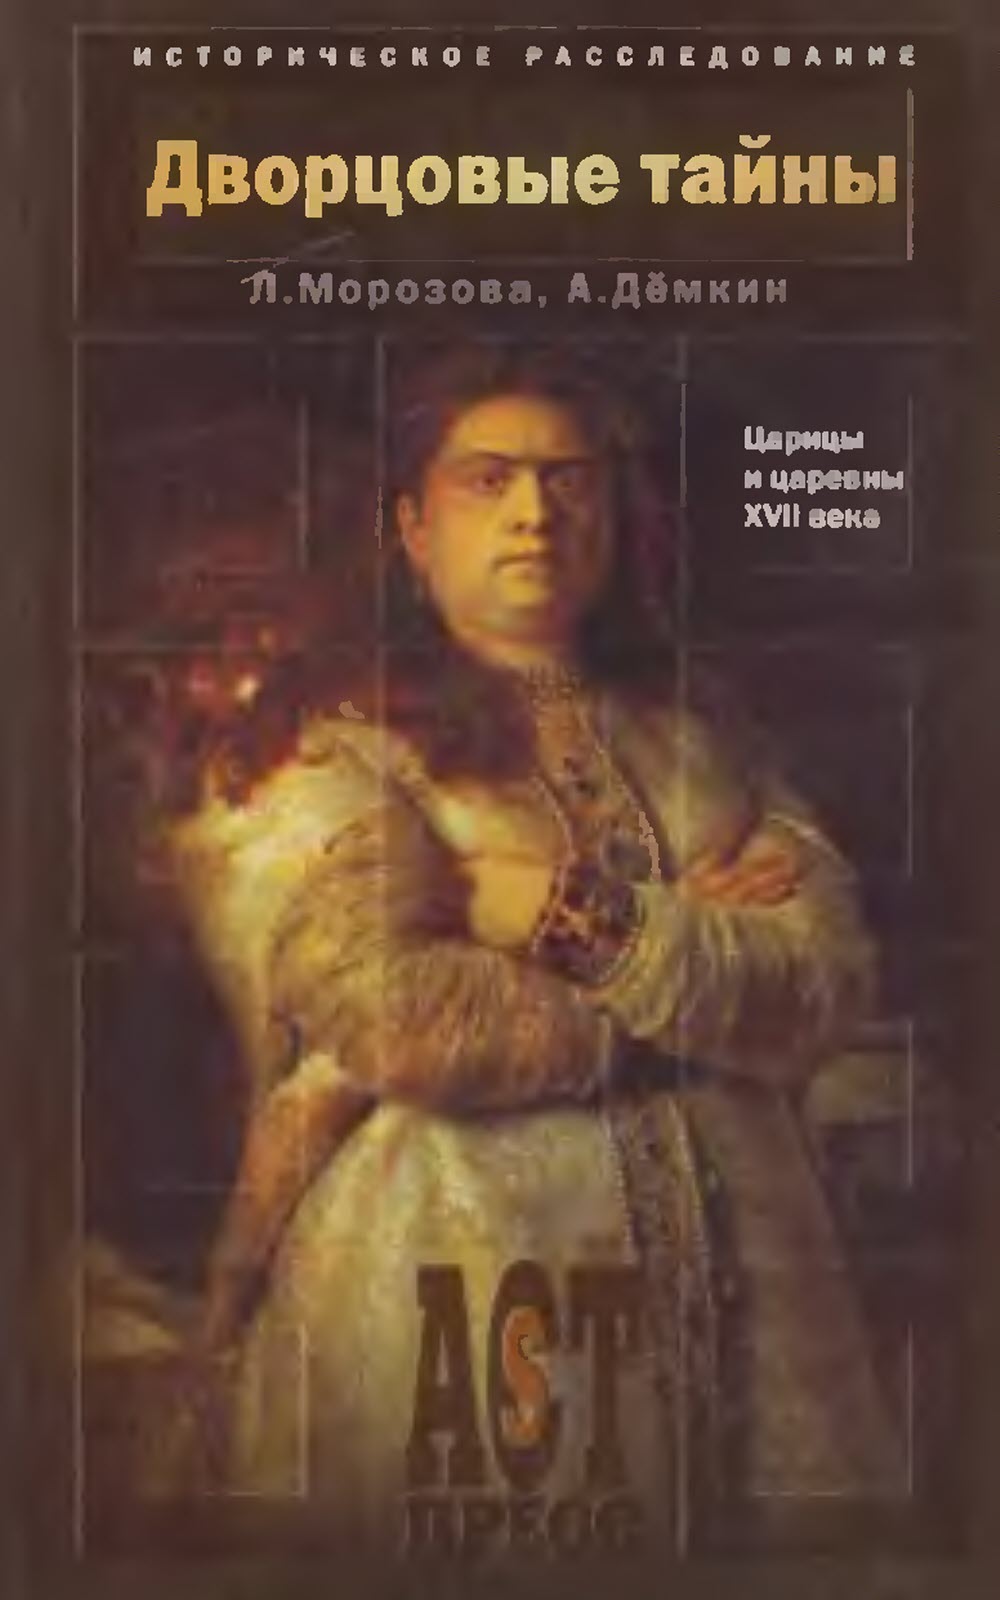 Дворцовые тайны. Царицы и царевны XVII века - Андрей Владимирович Дёмкин